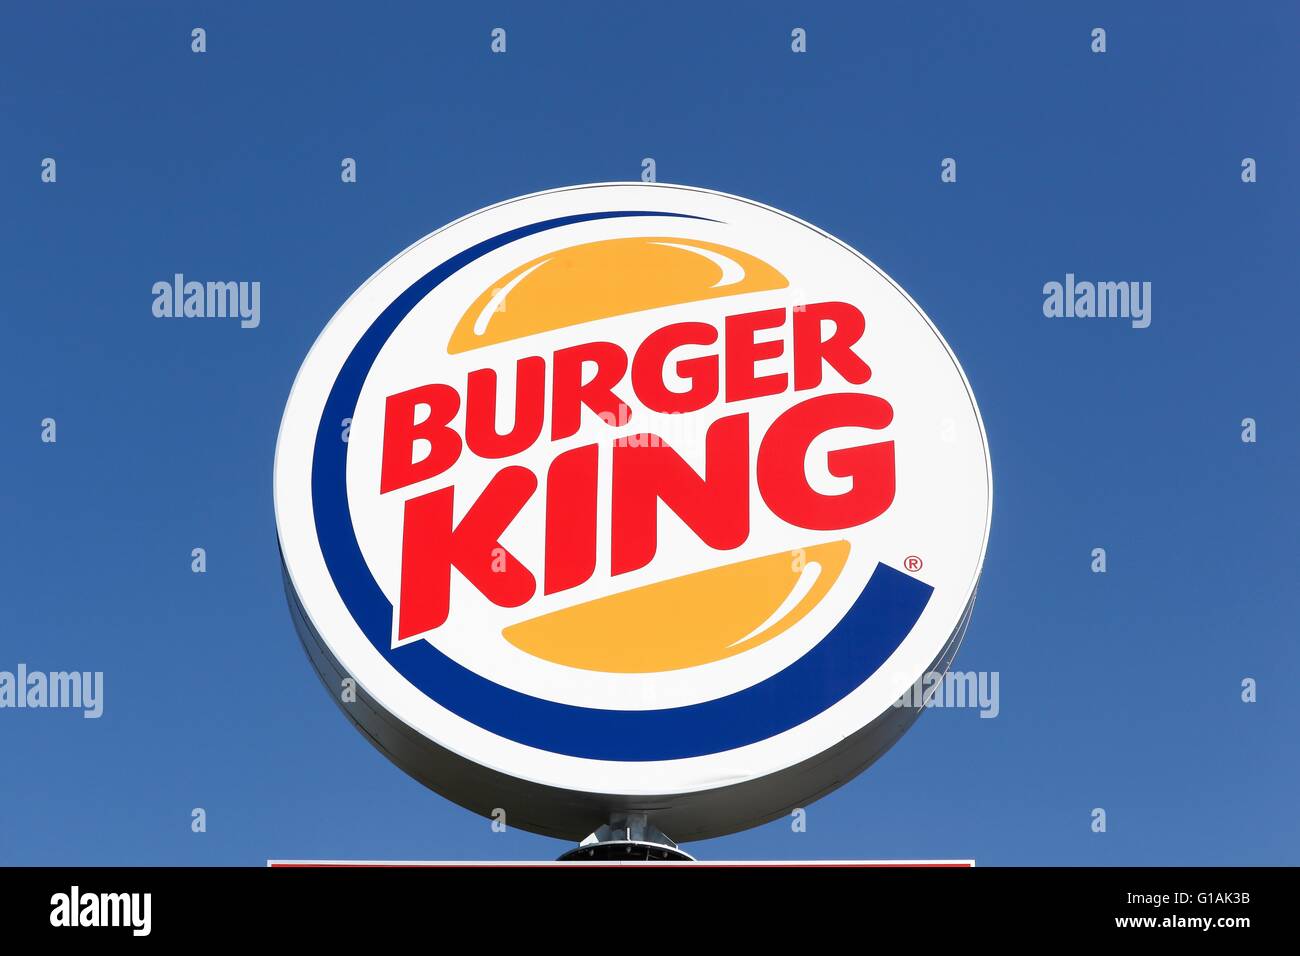 Anderson Silva Burger King Wallpaper  फट शयर